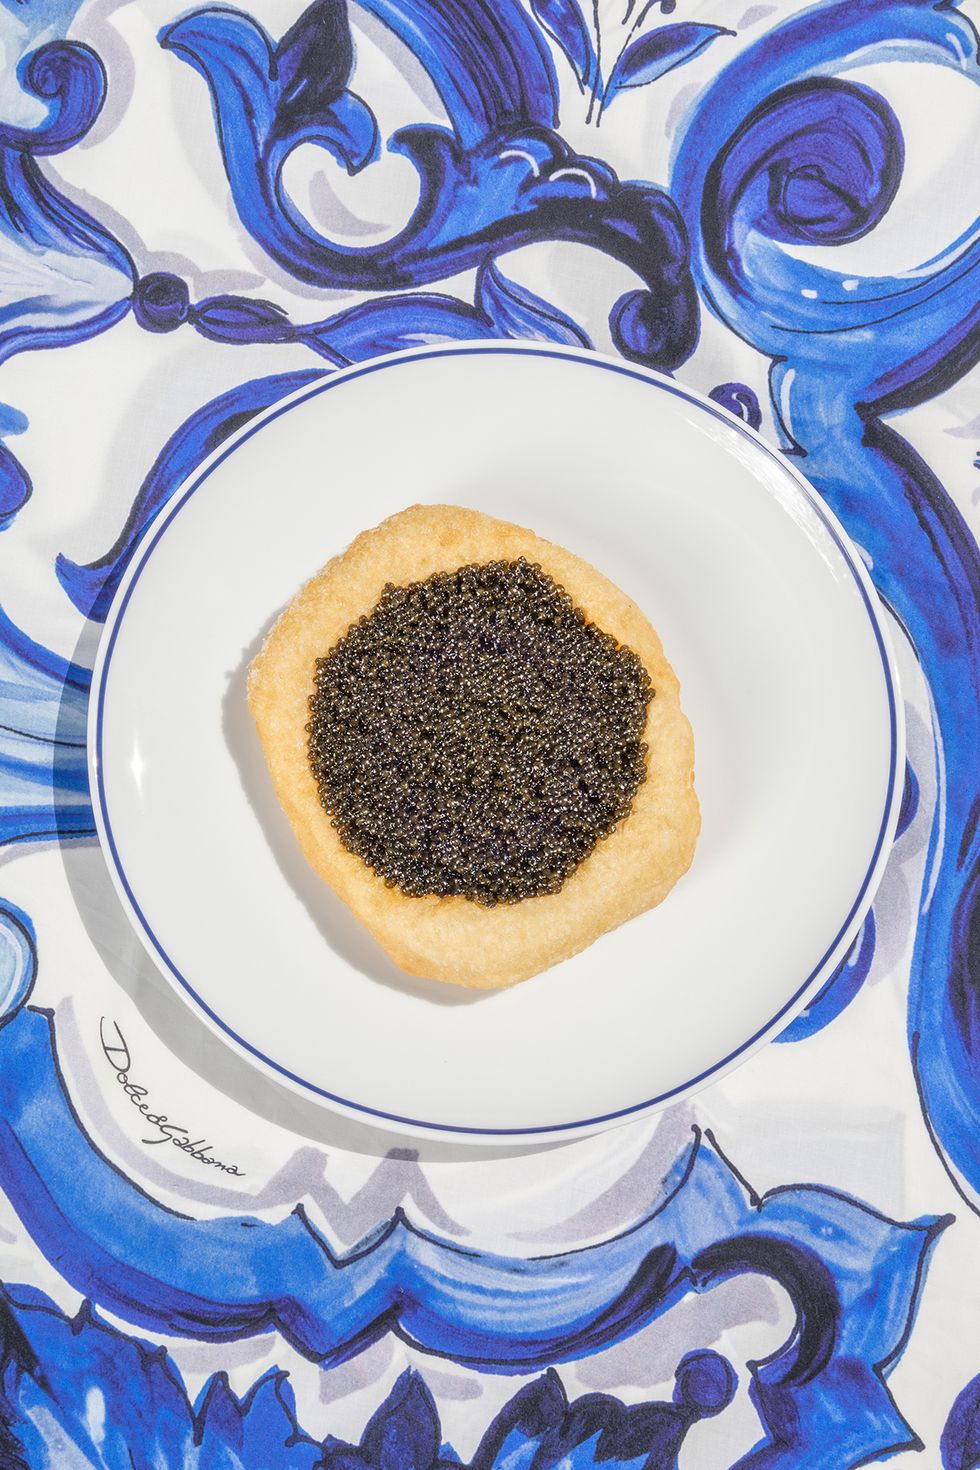 muntanara, mantequilla y caviar plato creado por el chef dani garcía para la cabane, en marbella